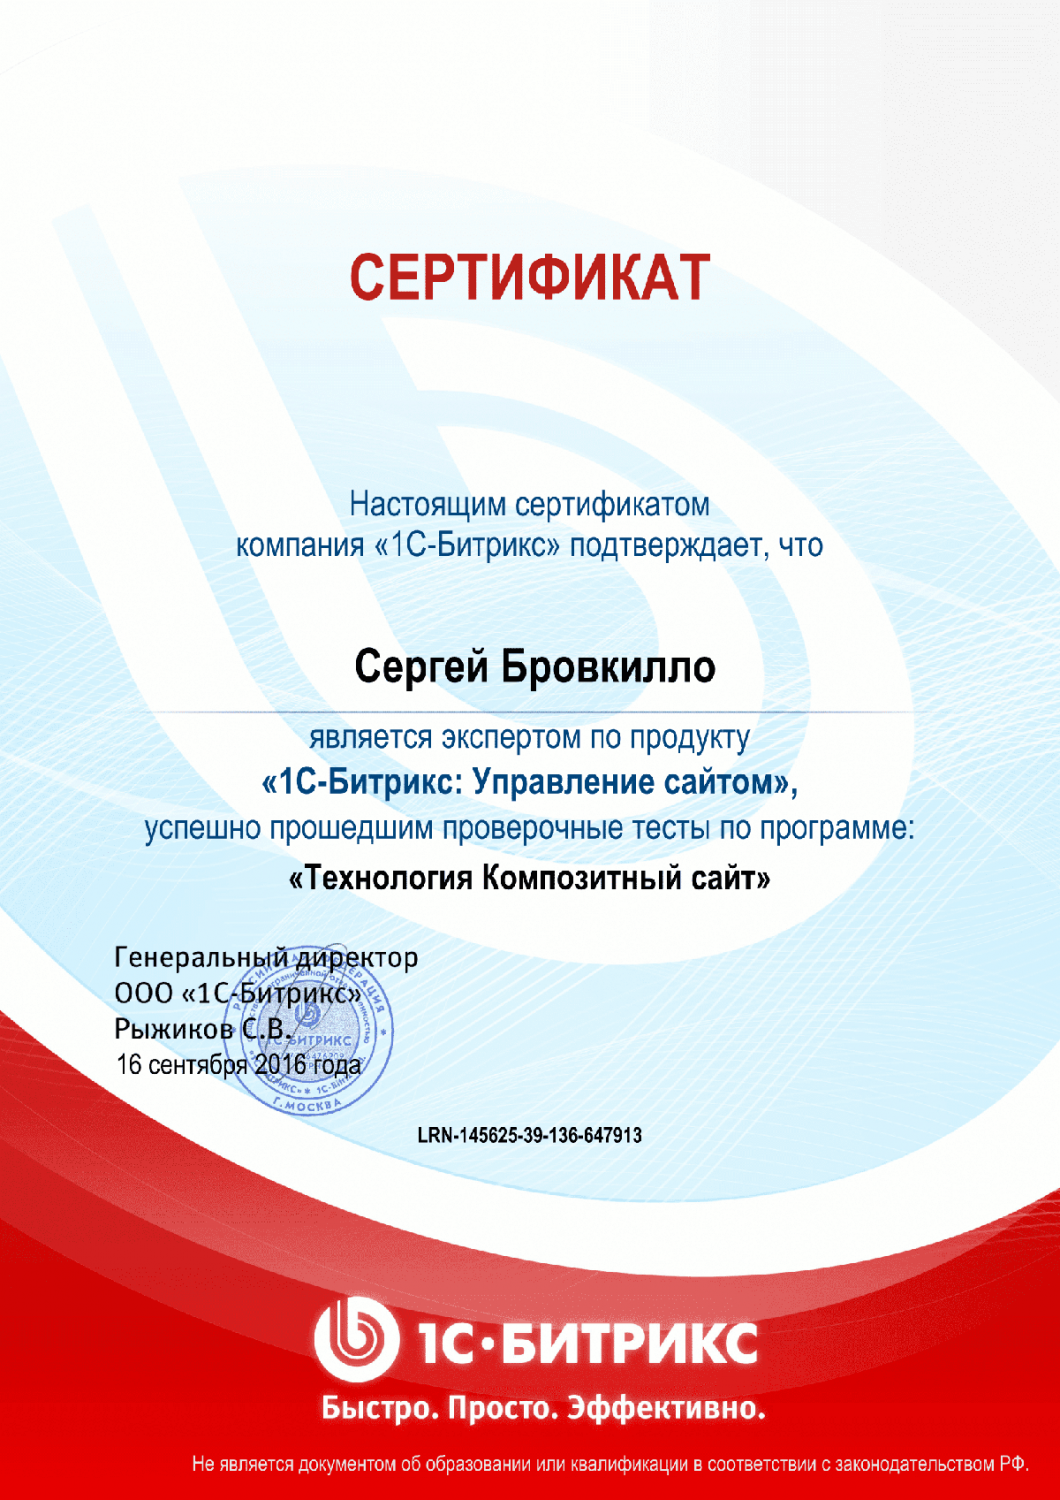 Сертификат "Технология Композитный сайт" в Хабаровска